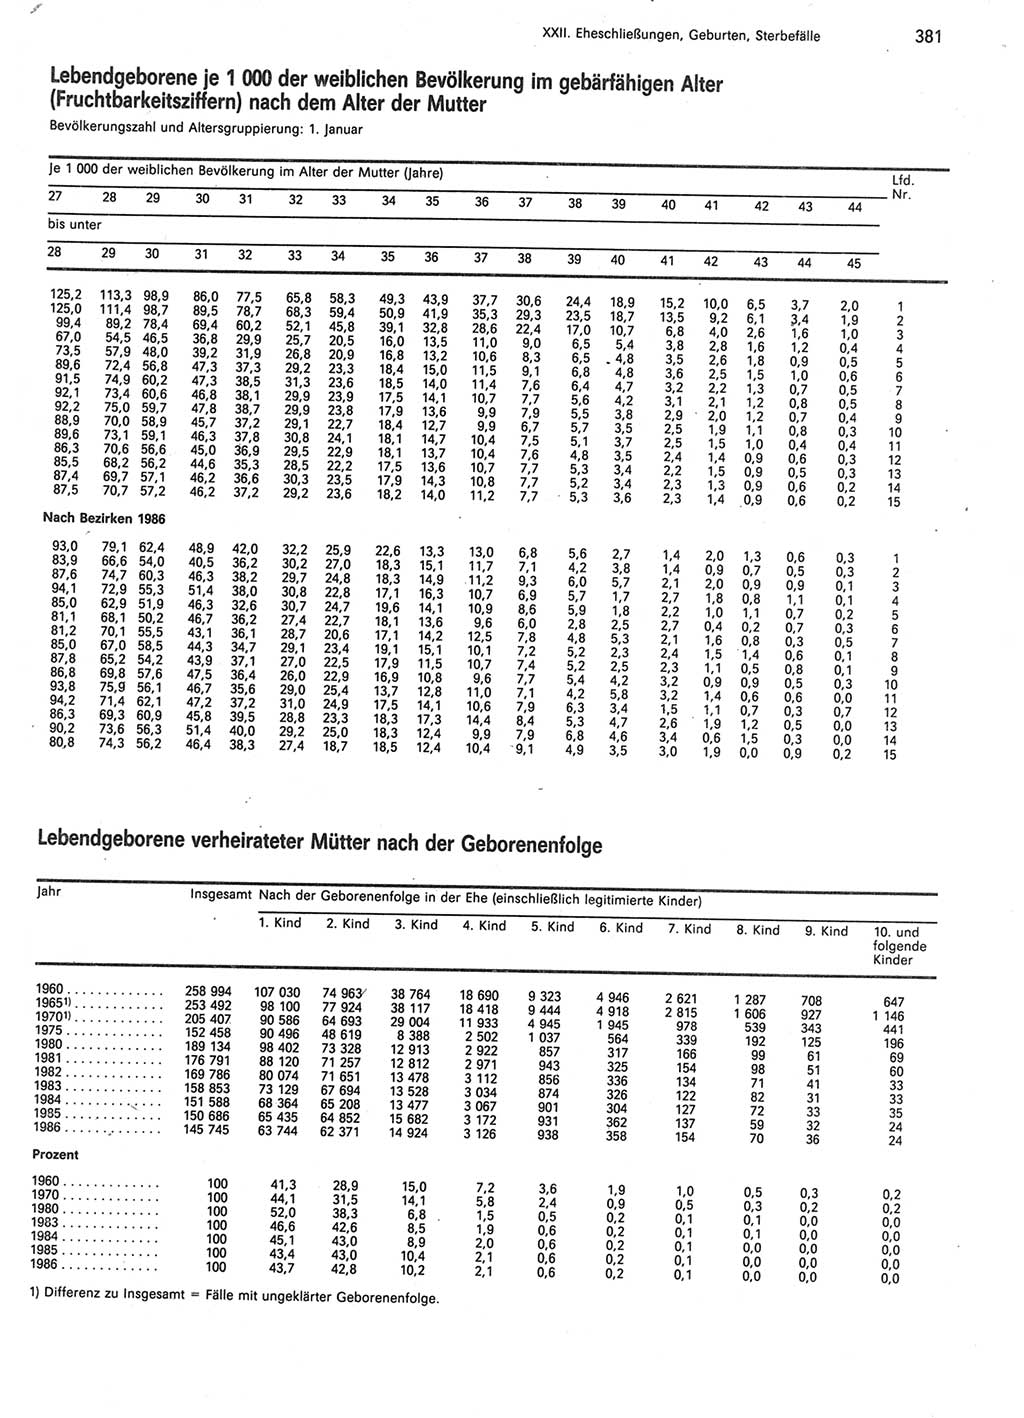 Statistisches Jahrbuch der Deutschen Demokratischen Republik (DDR) 1988, Seite 381 (Stat. Jb. DDR 1988, S. 381)